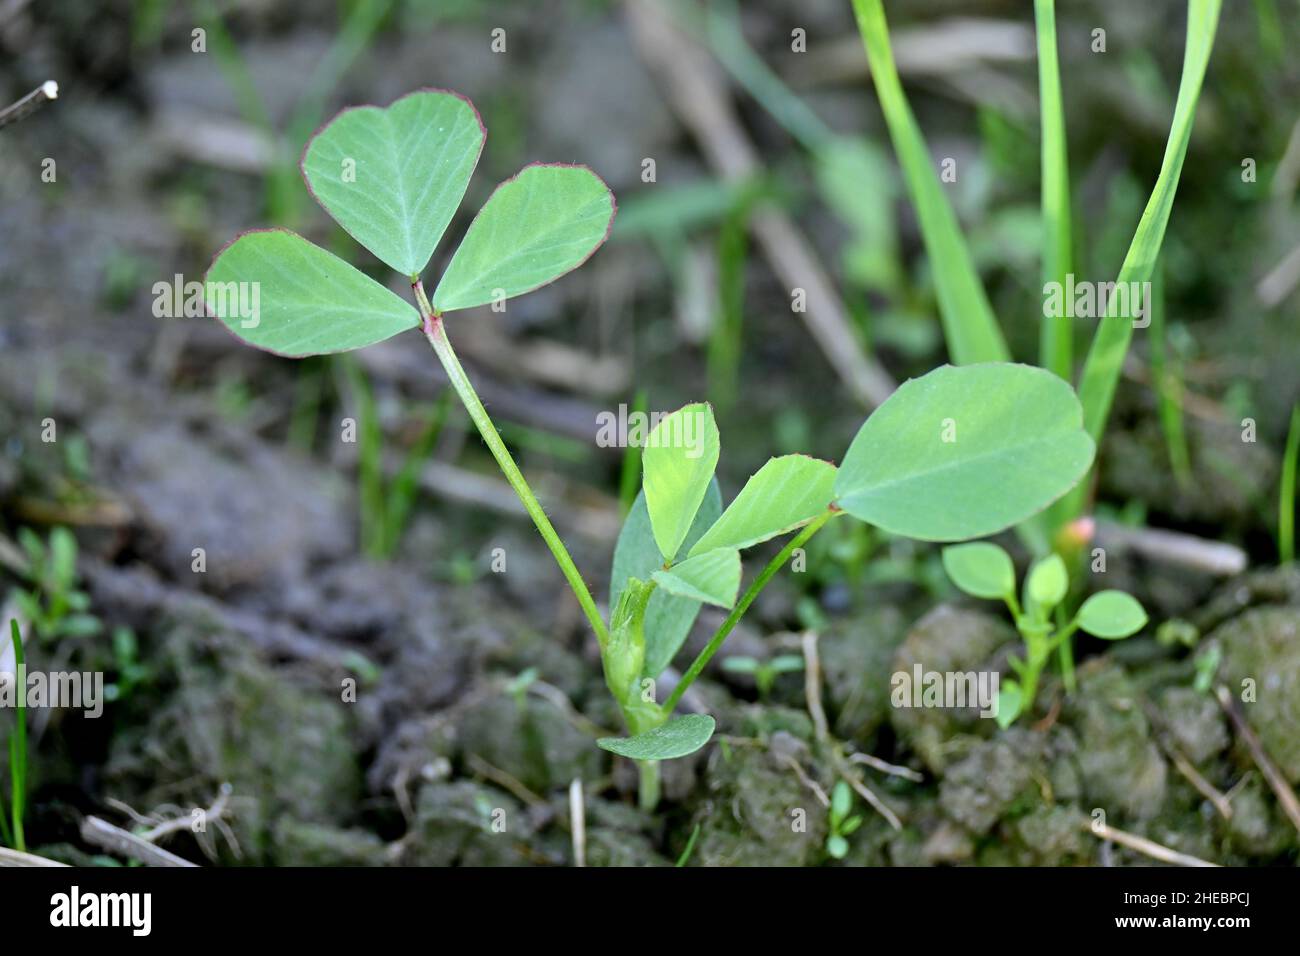 Nahaufnahme der reifen grünen griechischen Pflanze mit kleinen Blättern, die in der Farm über unscharf grün braunen Hintergrund wachsen. Stockfoto